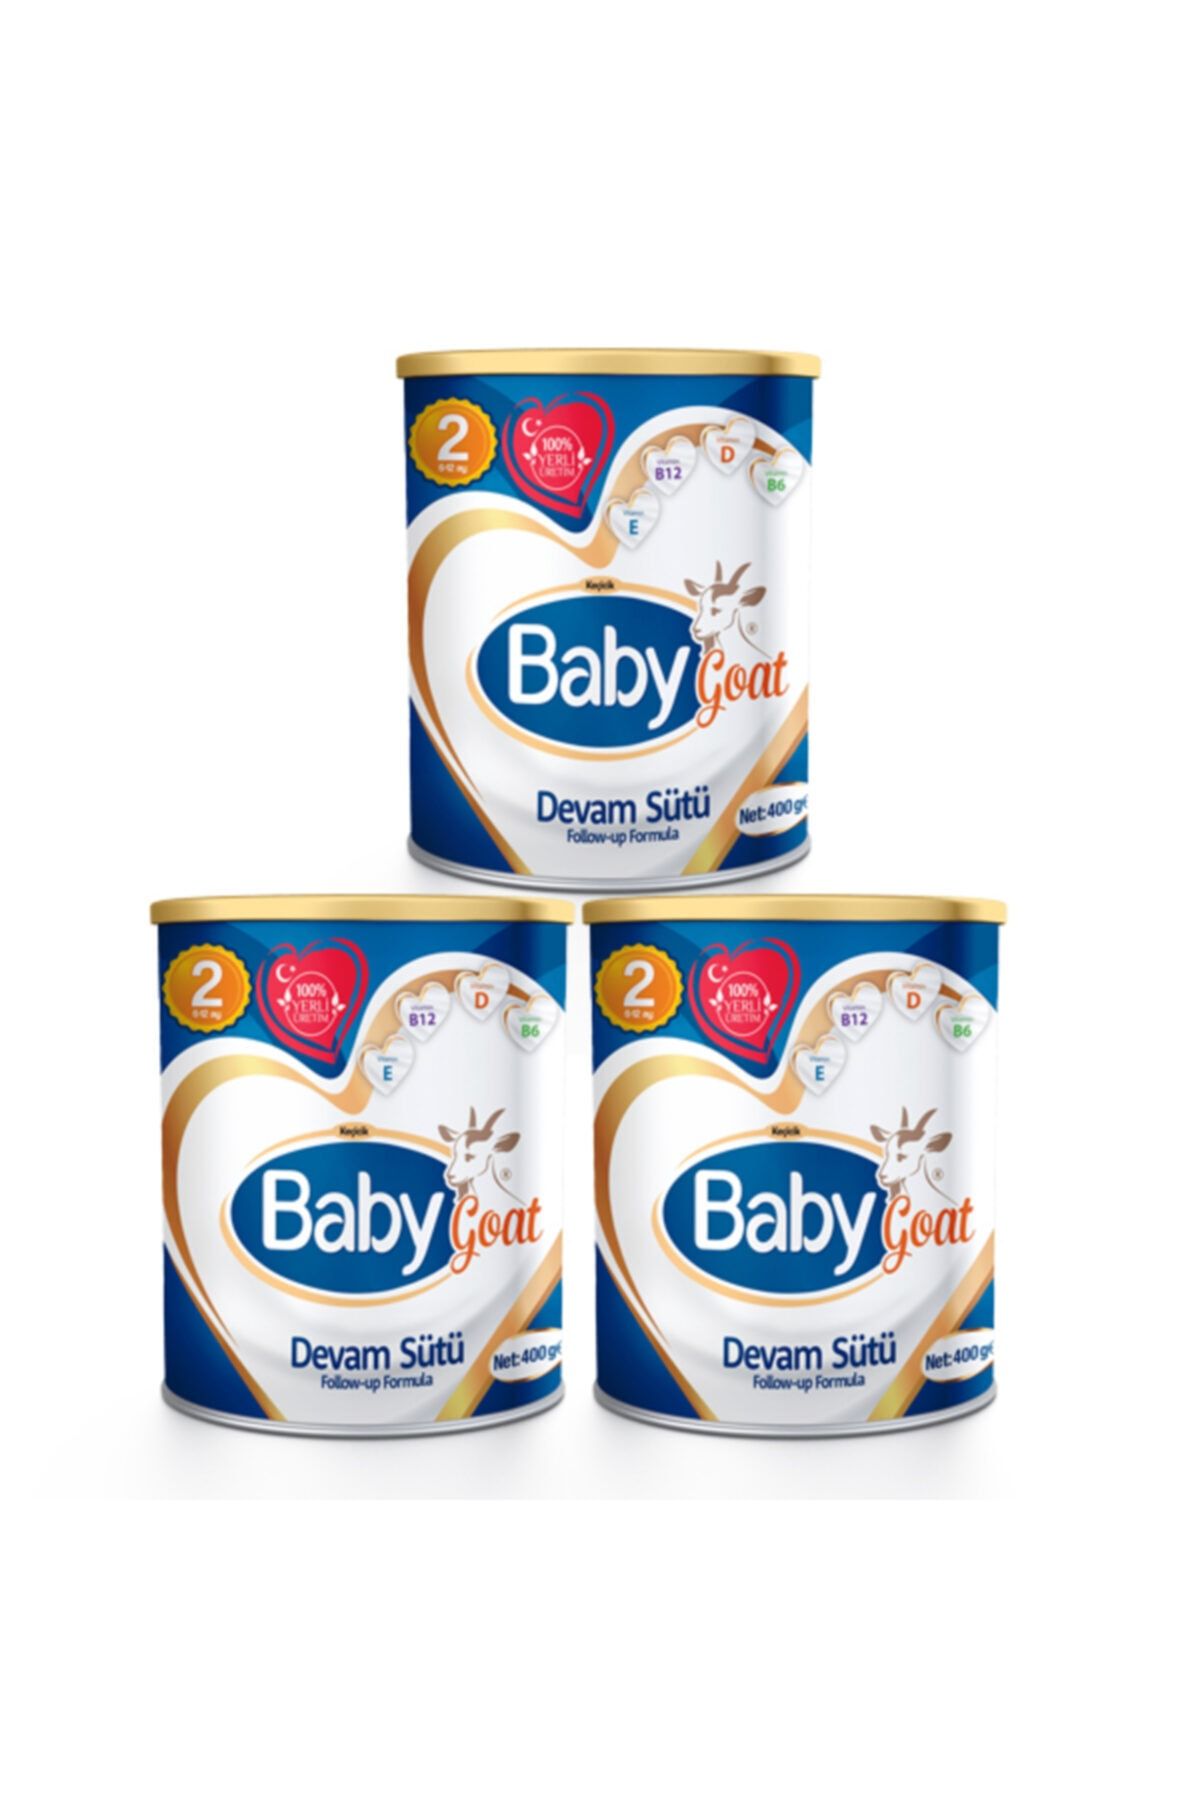 Baby Goat 2 Keçi Sütü Bazlı Devam Sütü 400 gr X 3 Adet